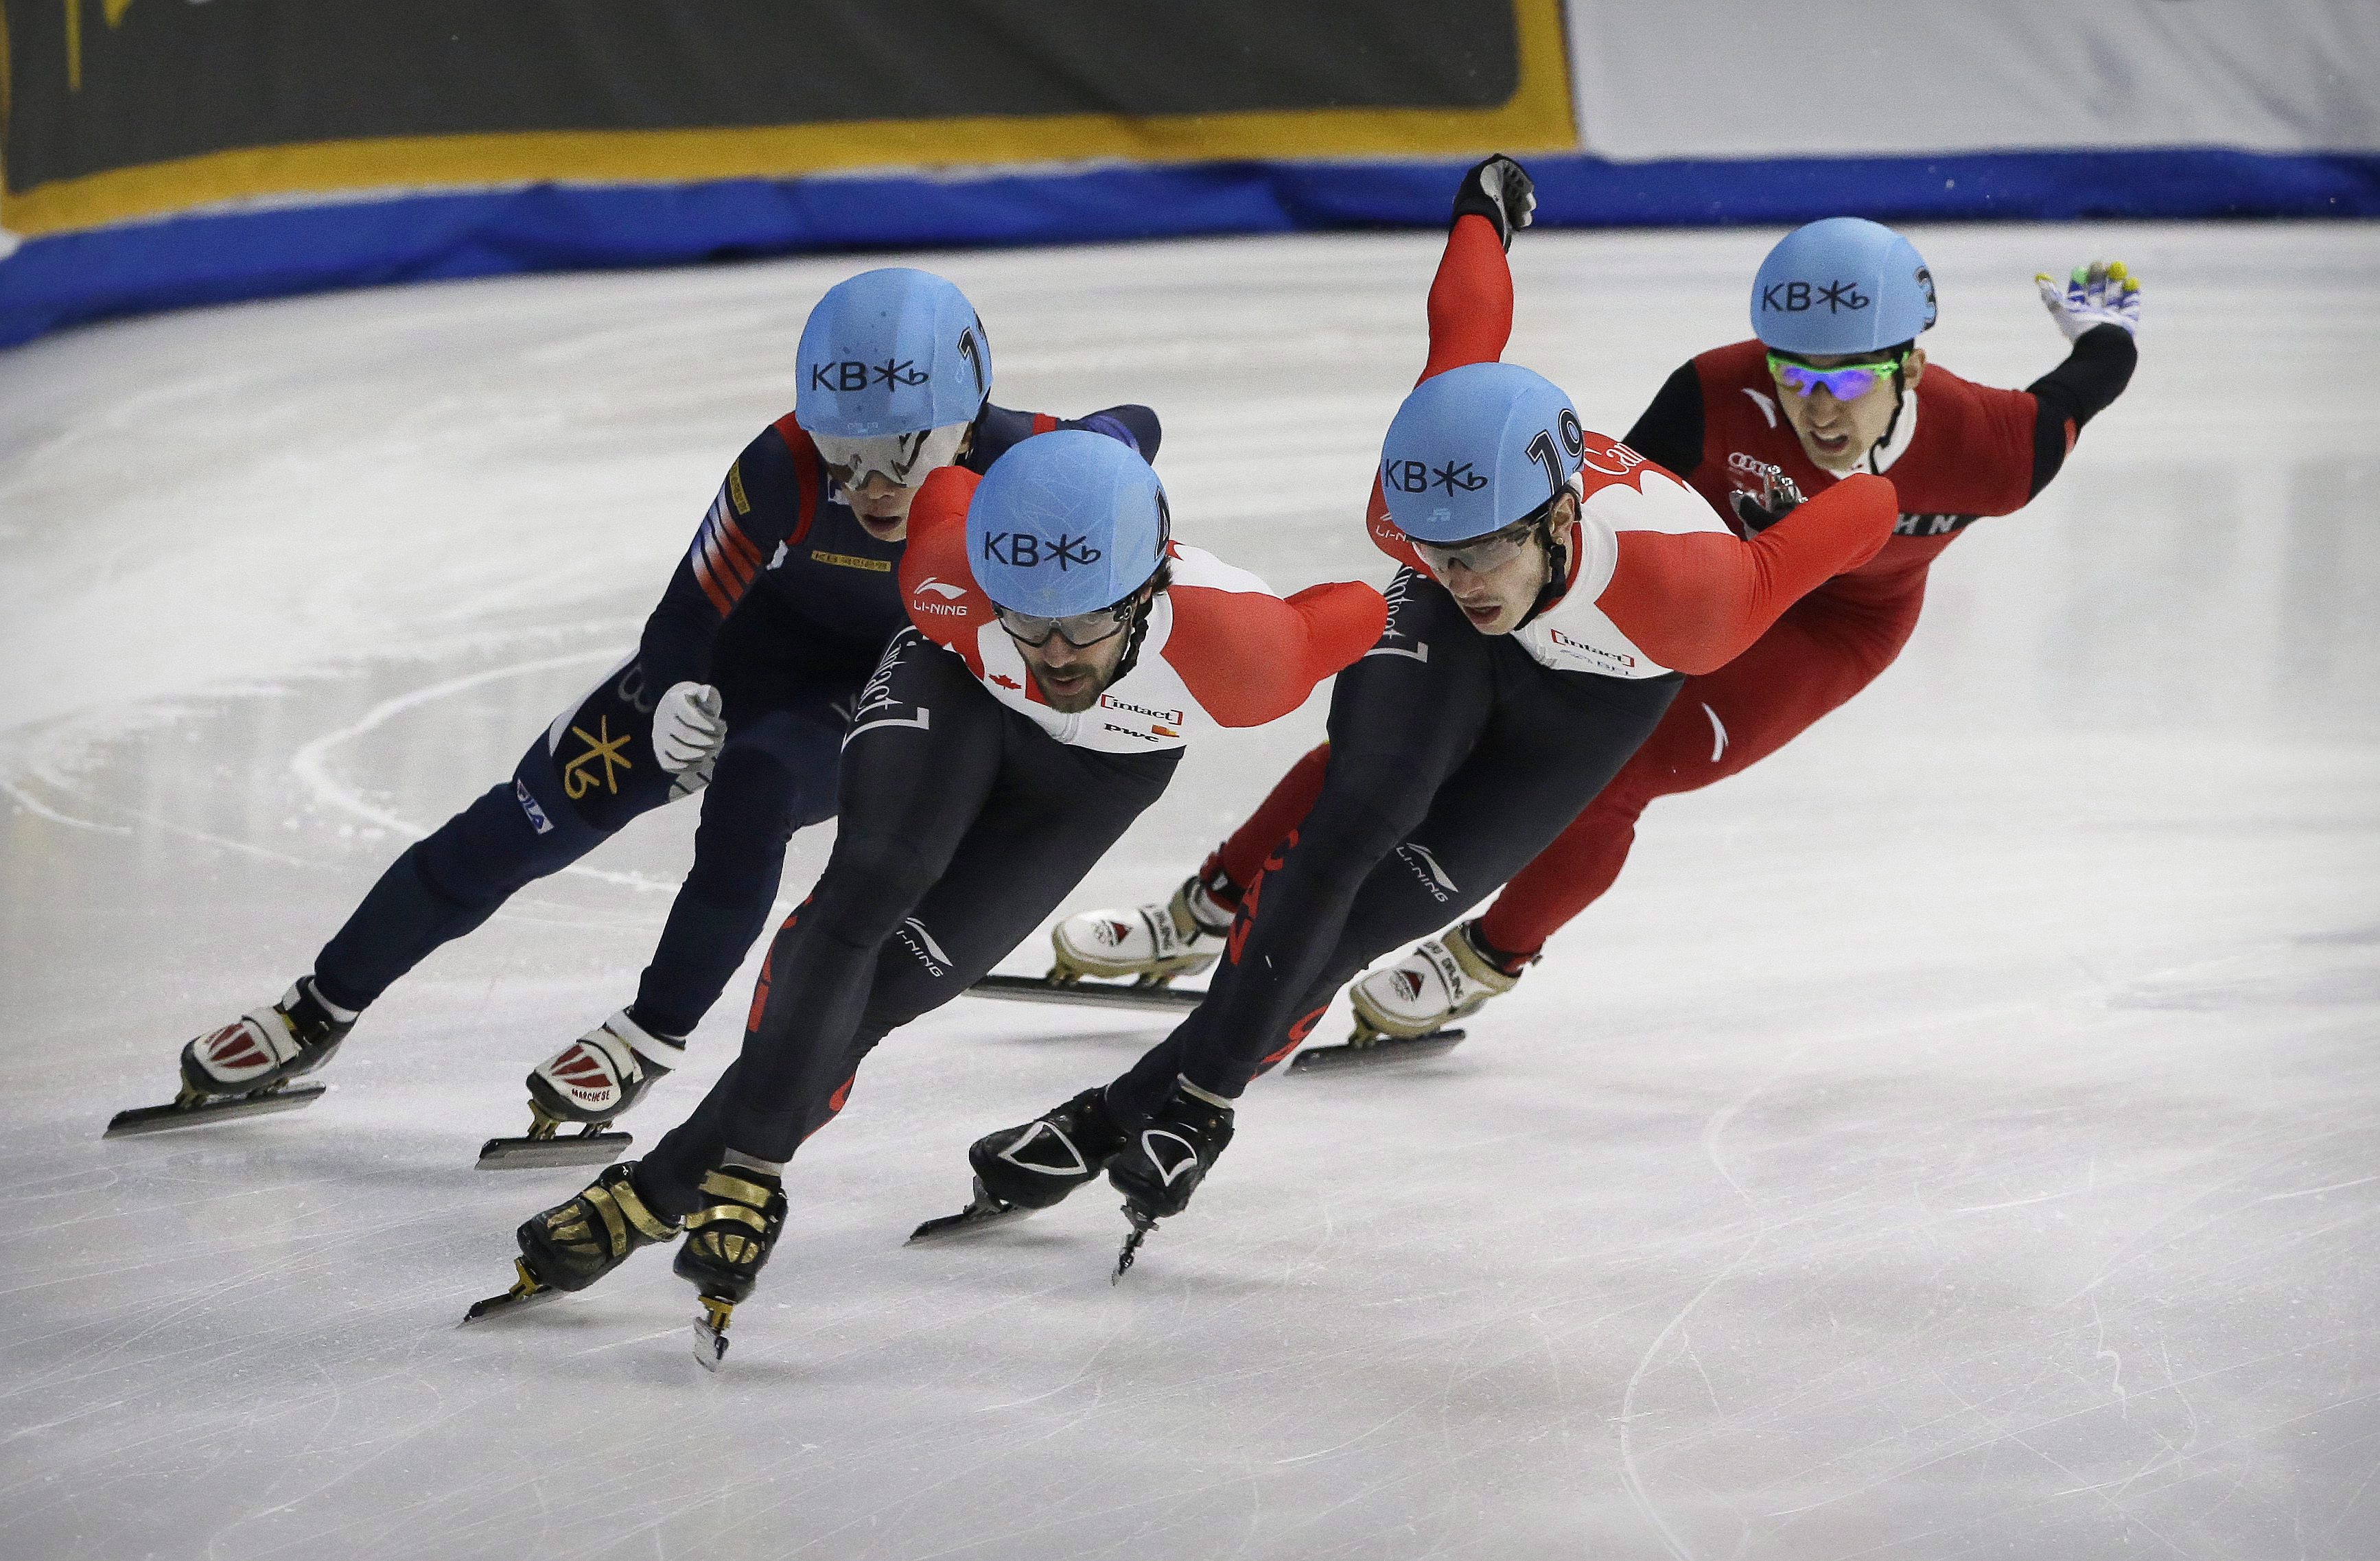 Charles Hamelin (2e à partir de la gauche) et Samuel Girard (2e à partir de la droite) lors des Championnats du monde de patinage de vitesse sur courte piste à Séoul, en Corée du Sud, le 13 mars 2016. (AP Photo/Ahn Young-joon)